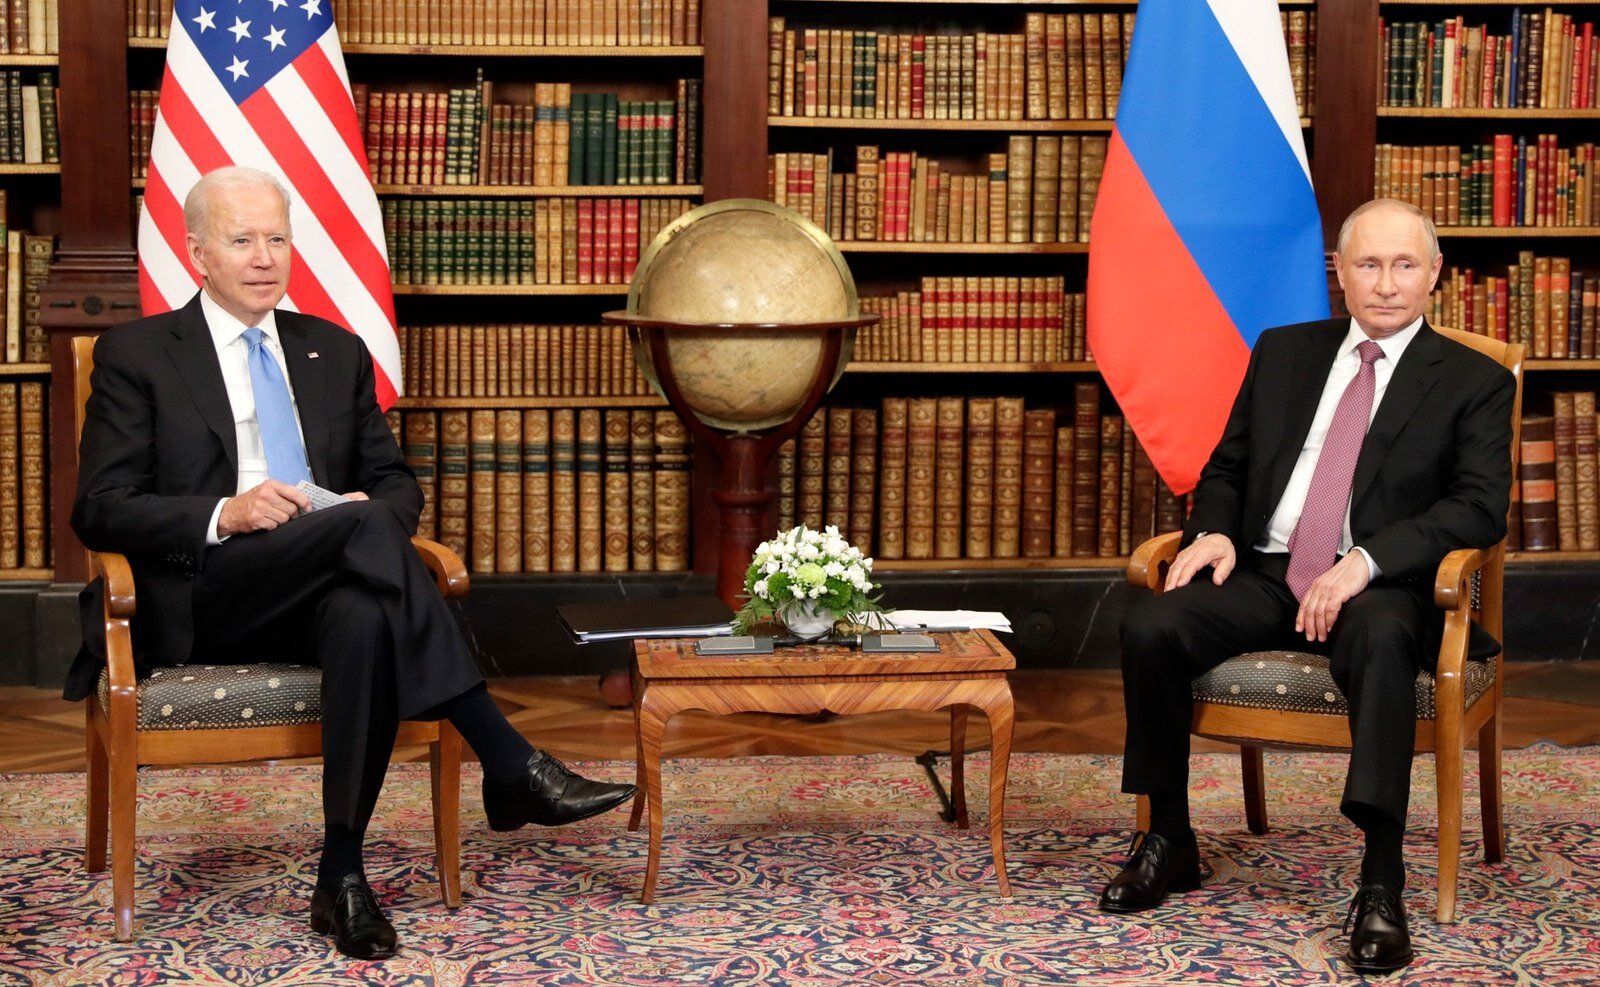 June 16th, 2021 – Joe Biden and Vladimir Putin at the G7 Summit in Geneva (Photo from Wikimedia Commons)